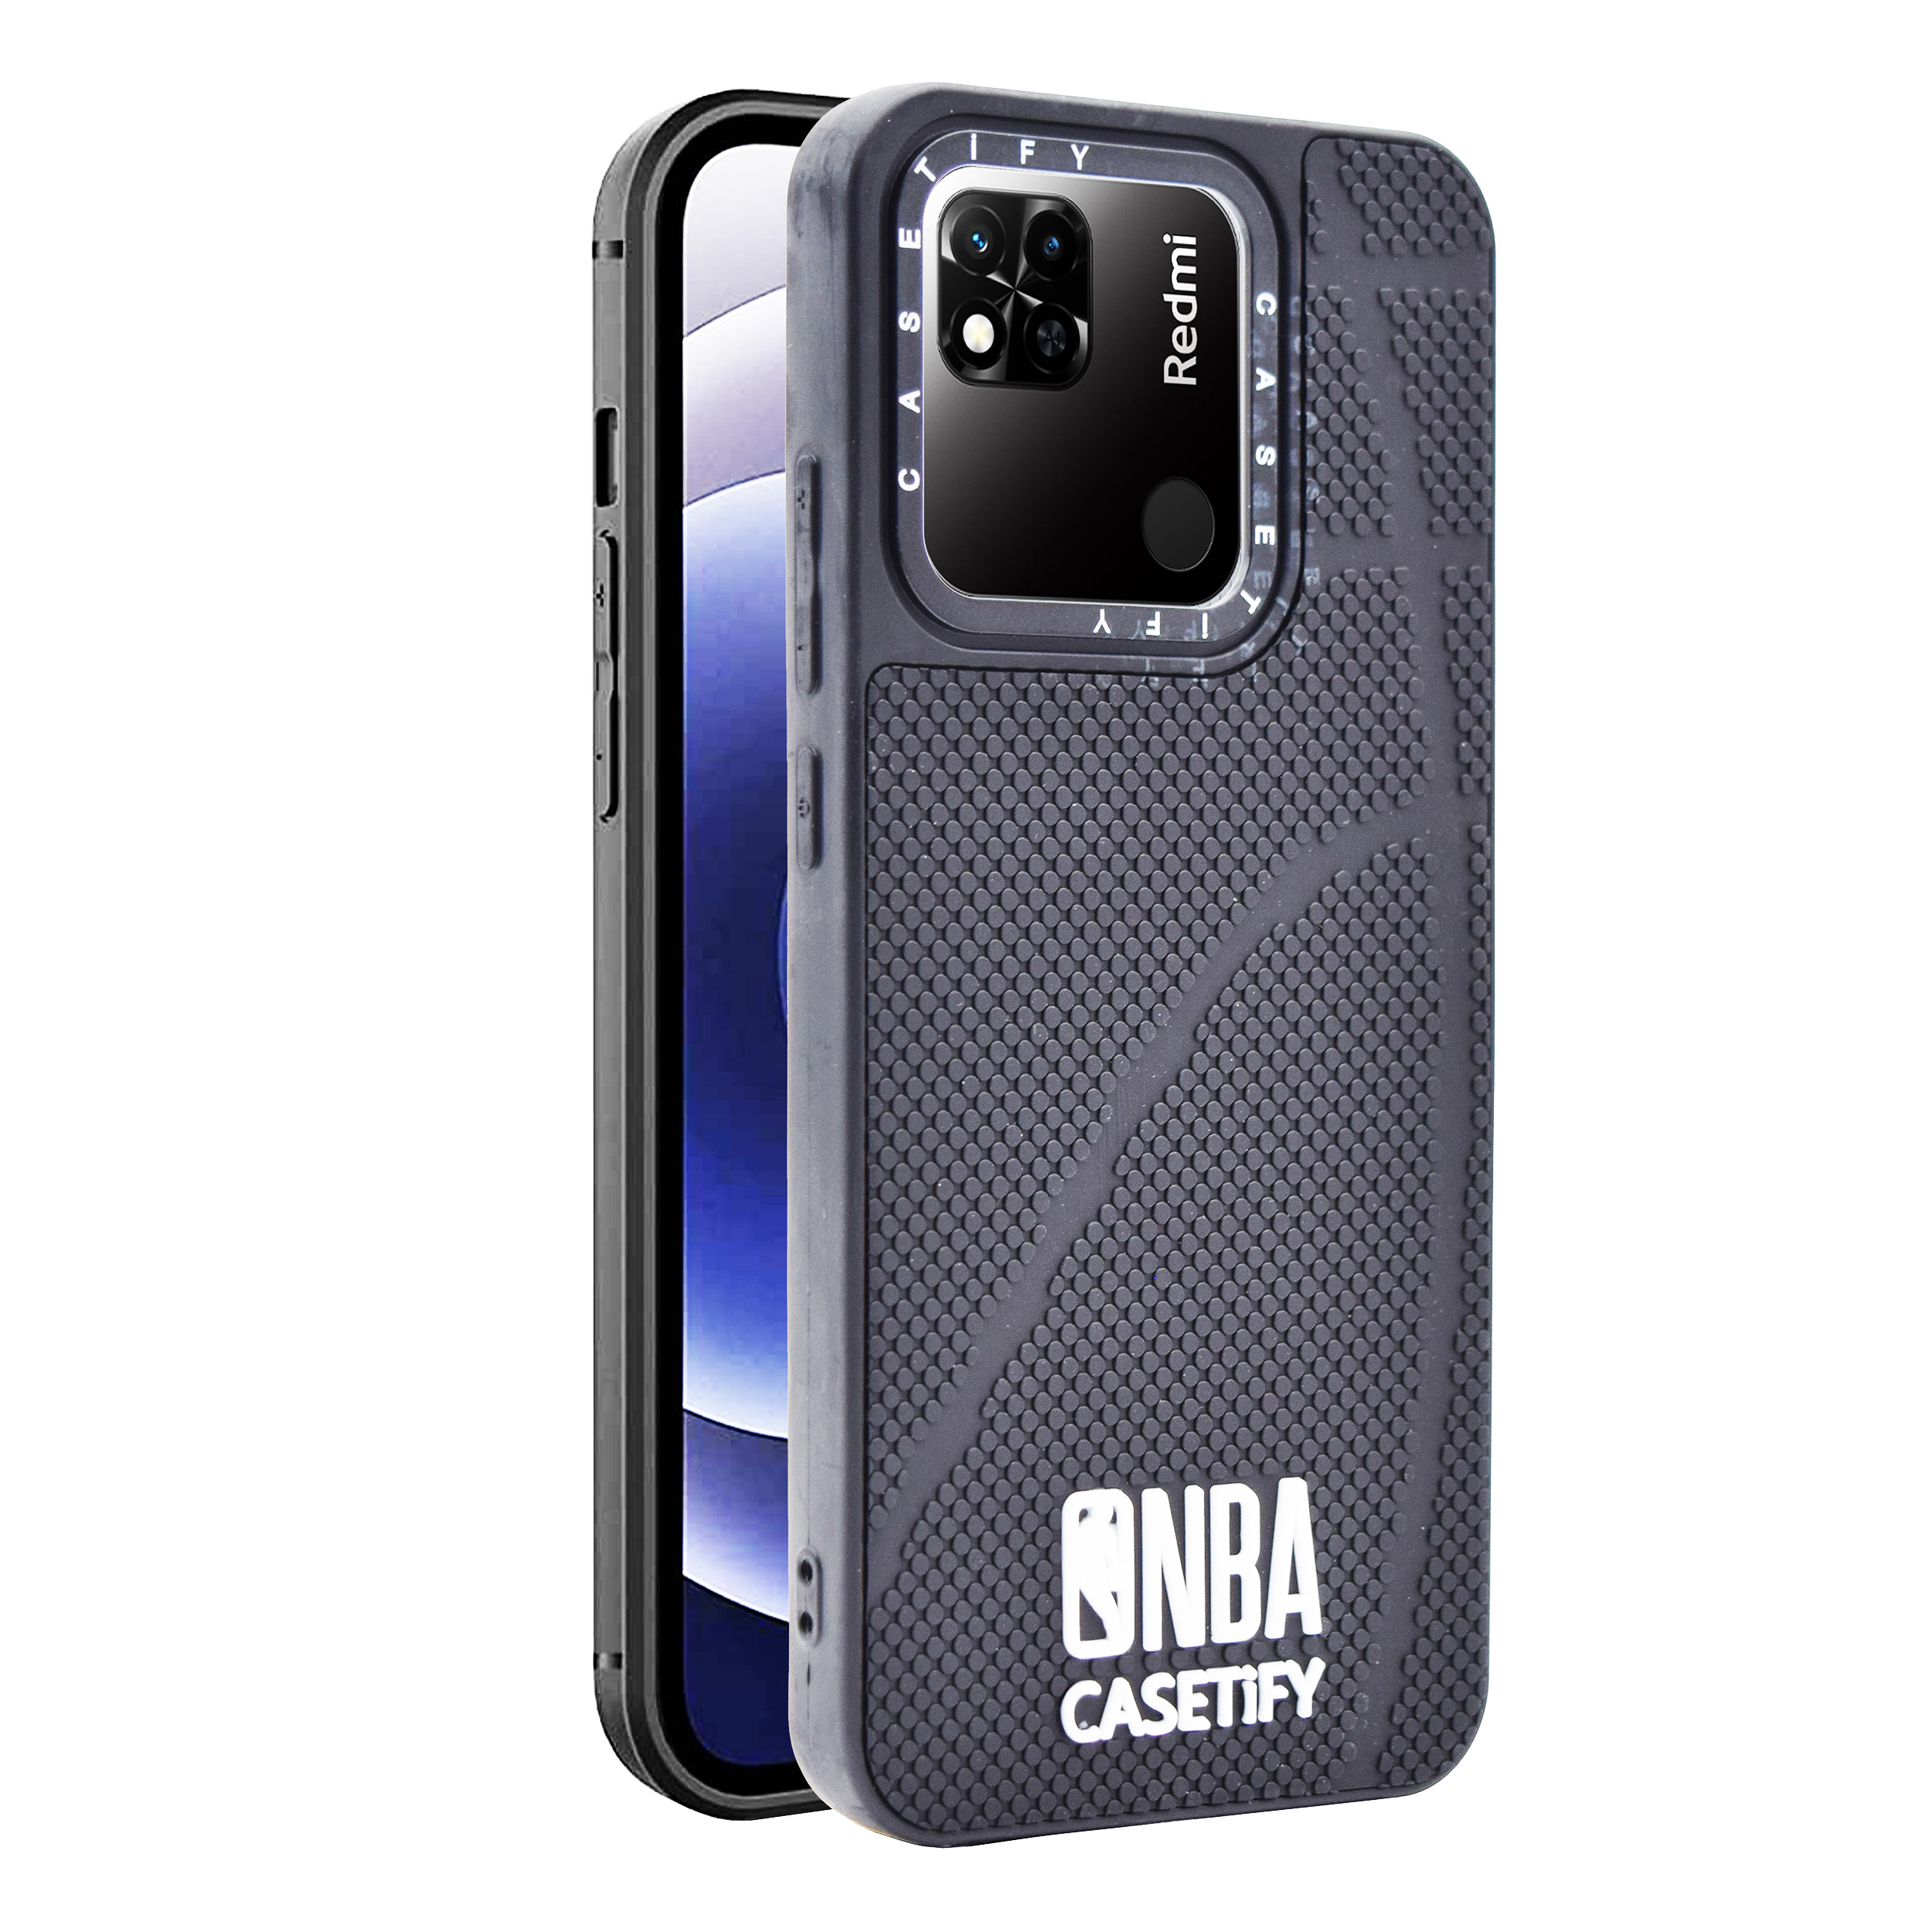 کاور کیس تیفای مدل NBA مناسب برای گوشی موبایل شیائومی Redmi 10A / Poco C31 / Redmi 9C